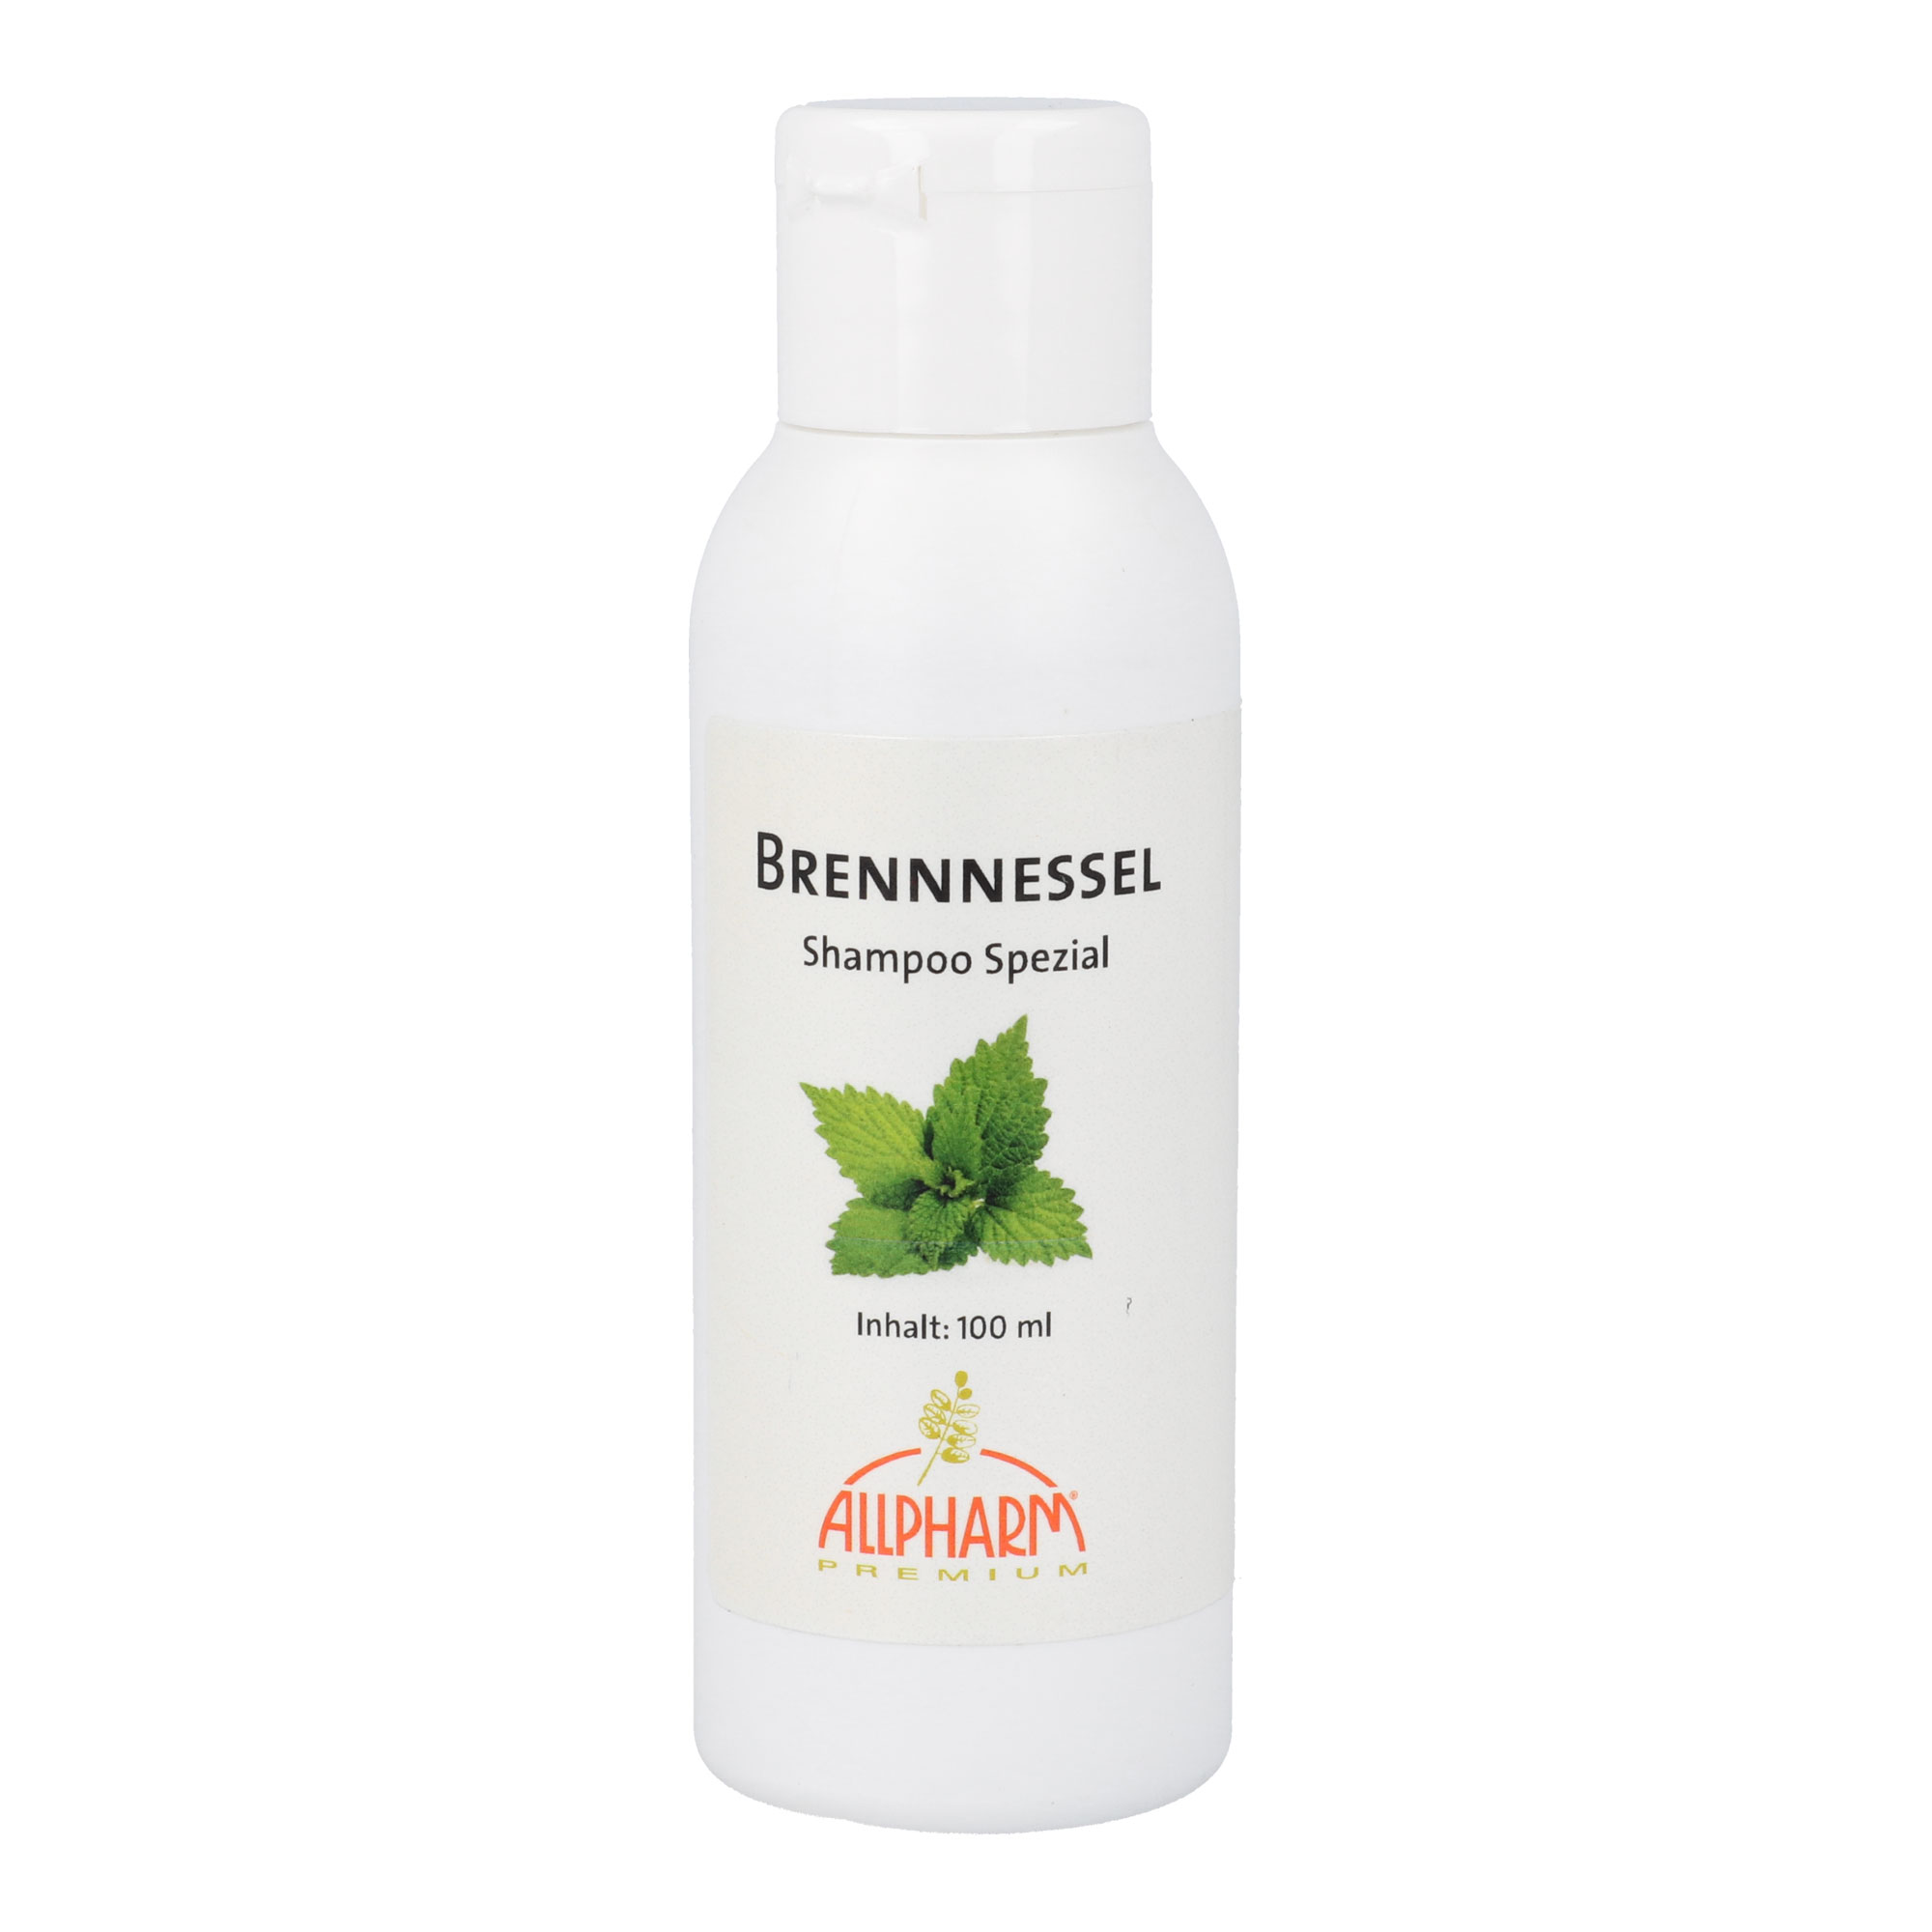 Shampoo mit Brennnessel-Extrakt und Brennnessel-Öl.